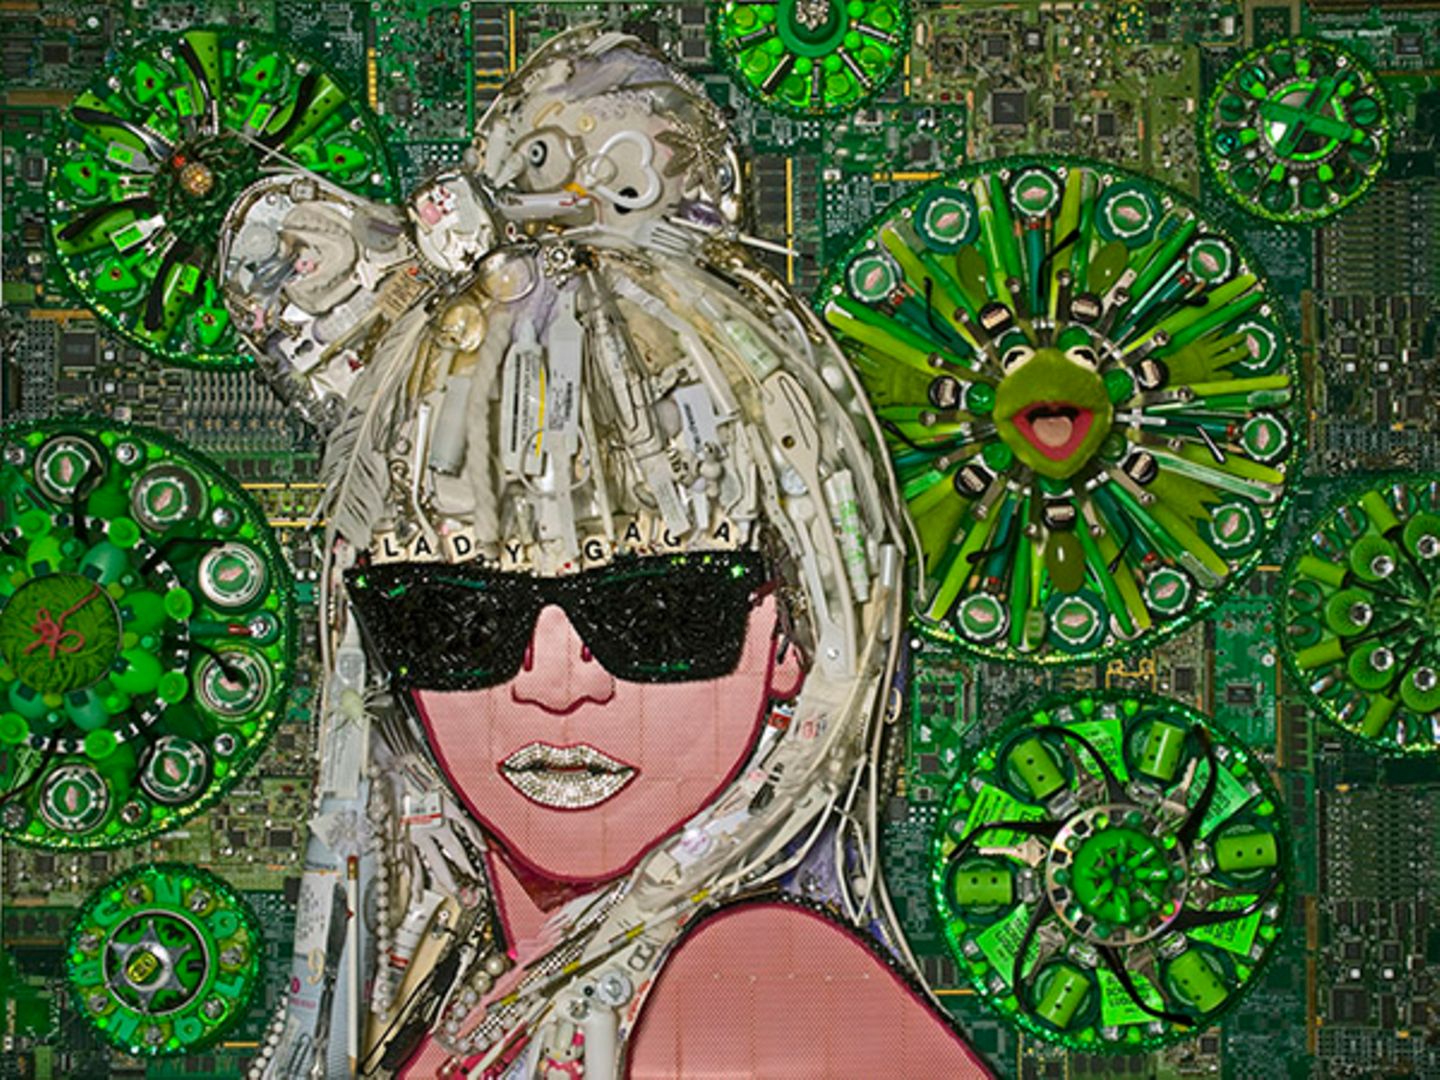 1. Februar 2010: Die Kunstwelt hat eine neue Muse - Aus Müll und Resten hat Jason Mecier im Mosaik-Stil ein Bild von Lady Gaga g